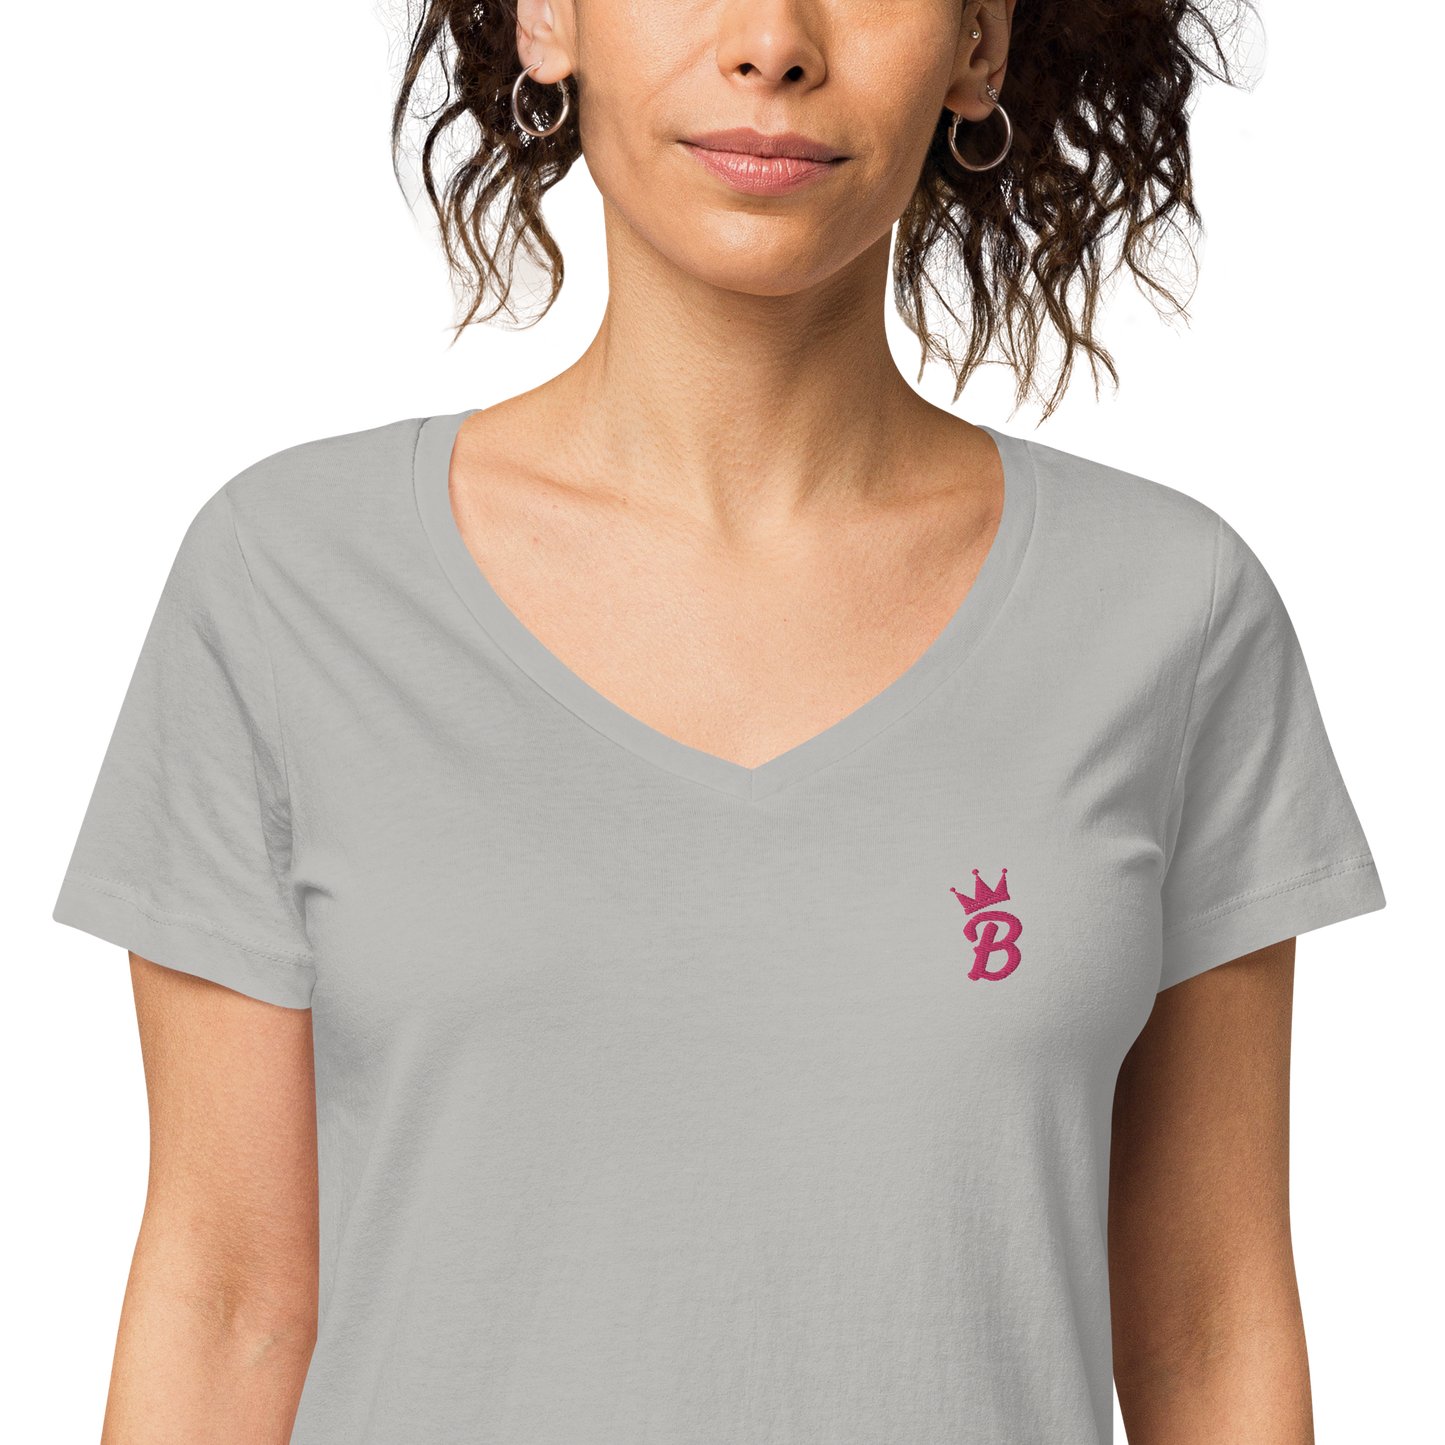 Bellaロゴ刺繍レディース フィット Vネック オーガニック Tシャツ